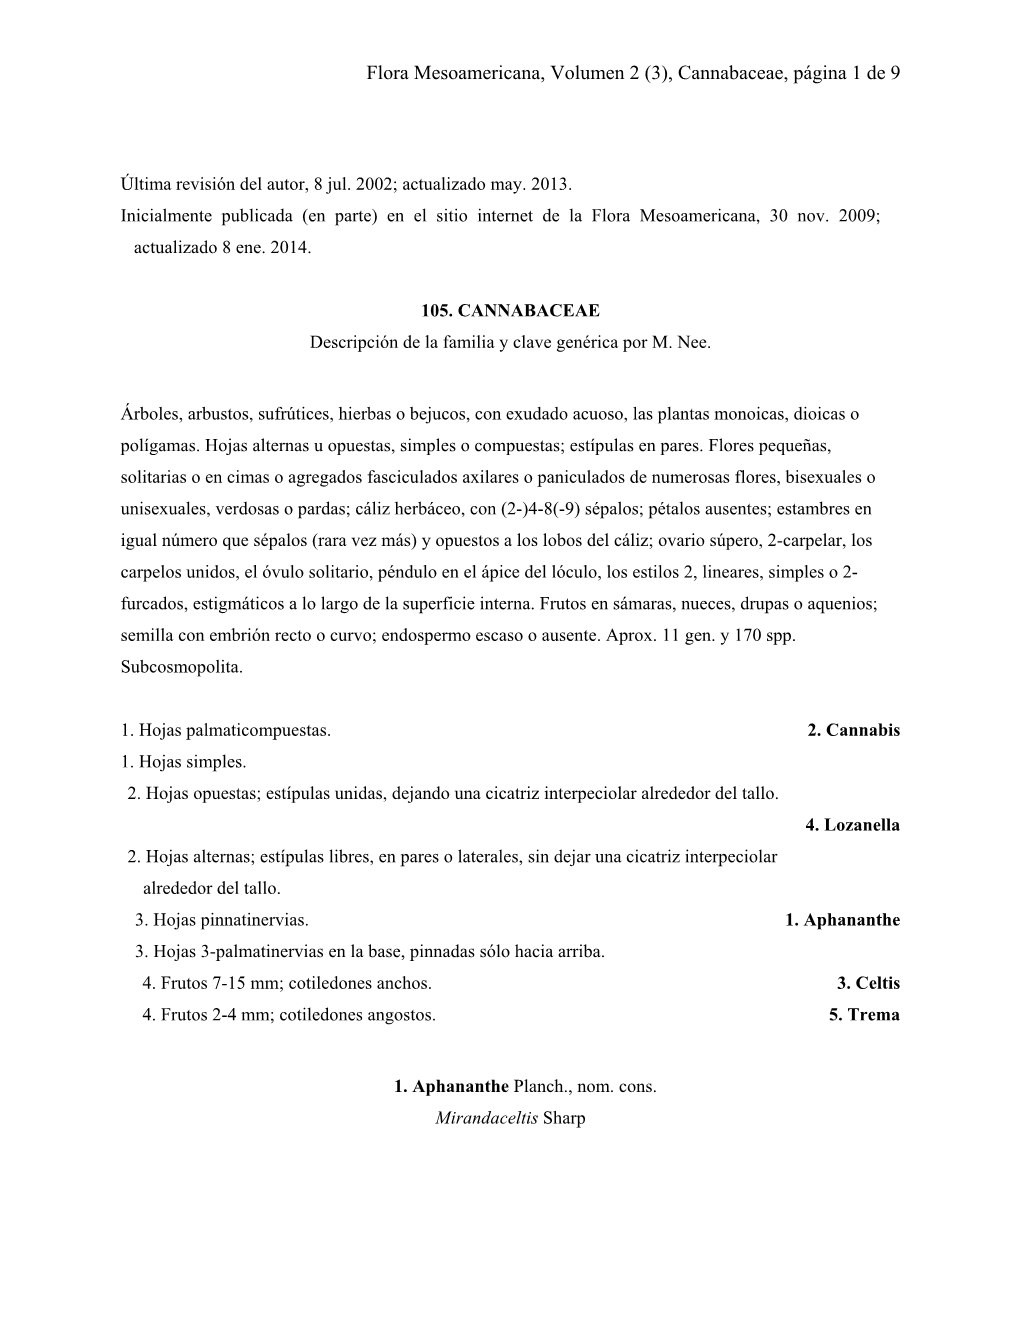 Flora Mesoamericana, Volumen 2 (3), Cannabaceae, Página 1 De 9